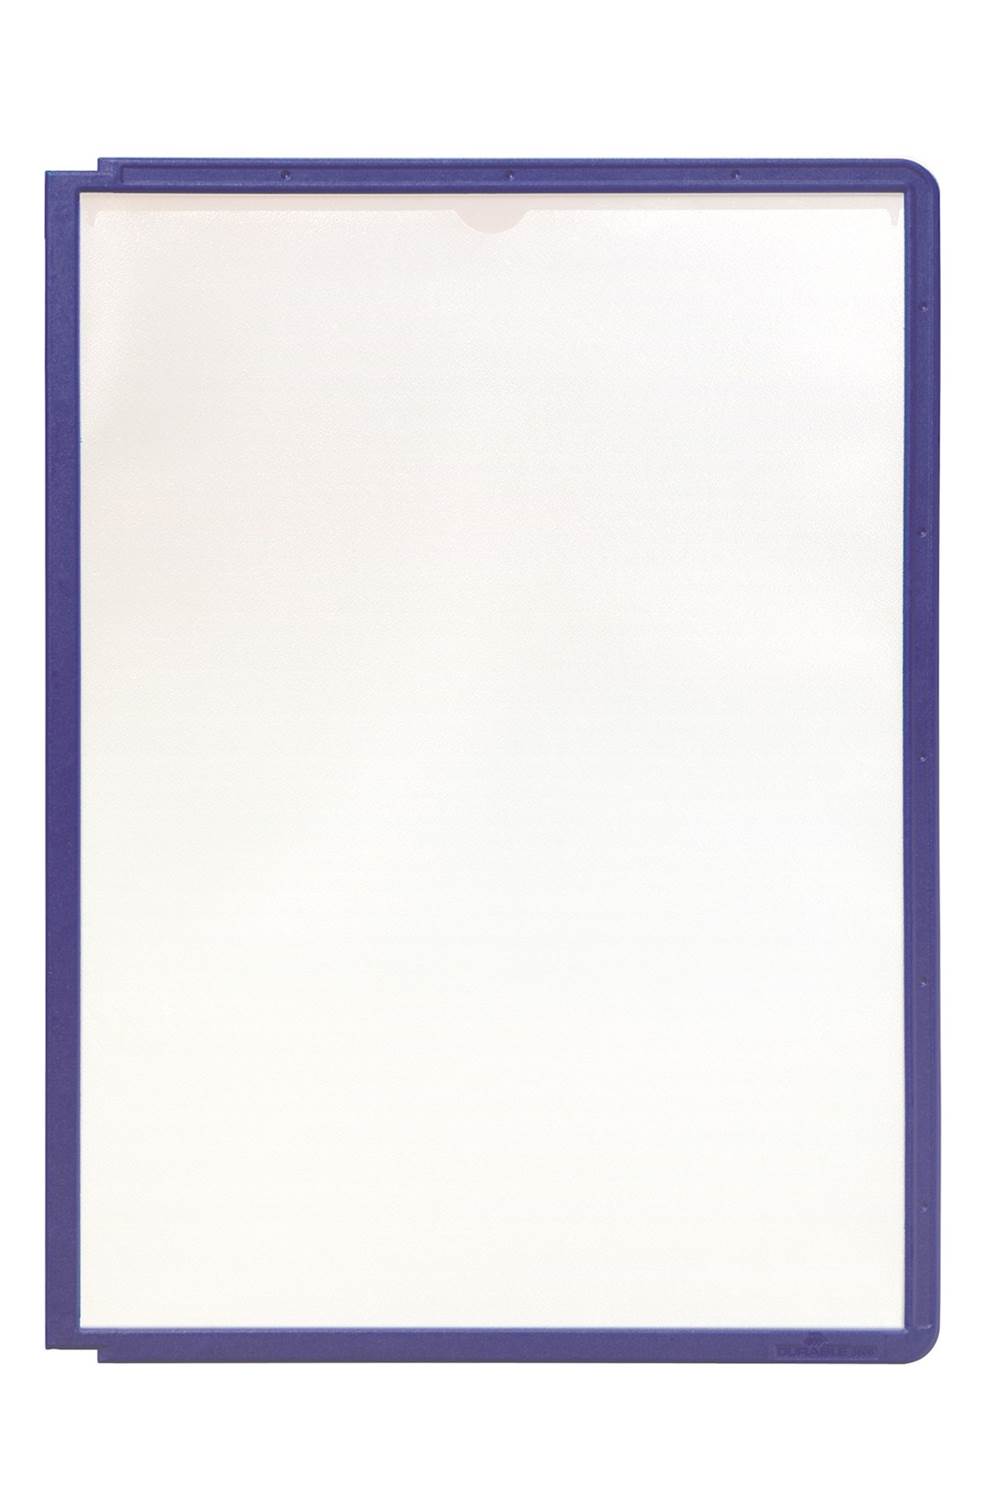 SHERPA panel informacyjny A4 PP niebiesko-fioletowy